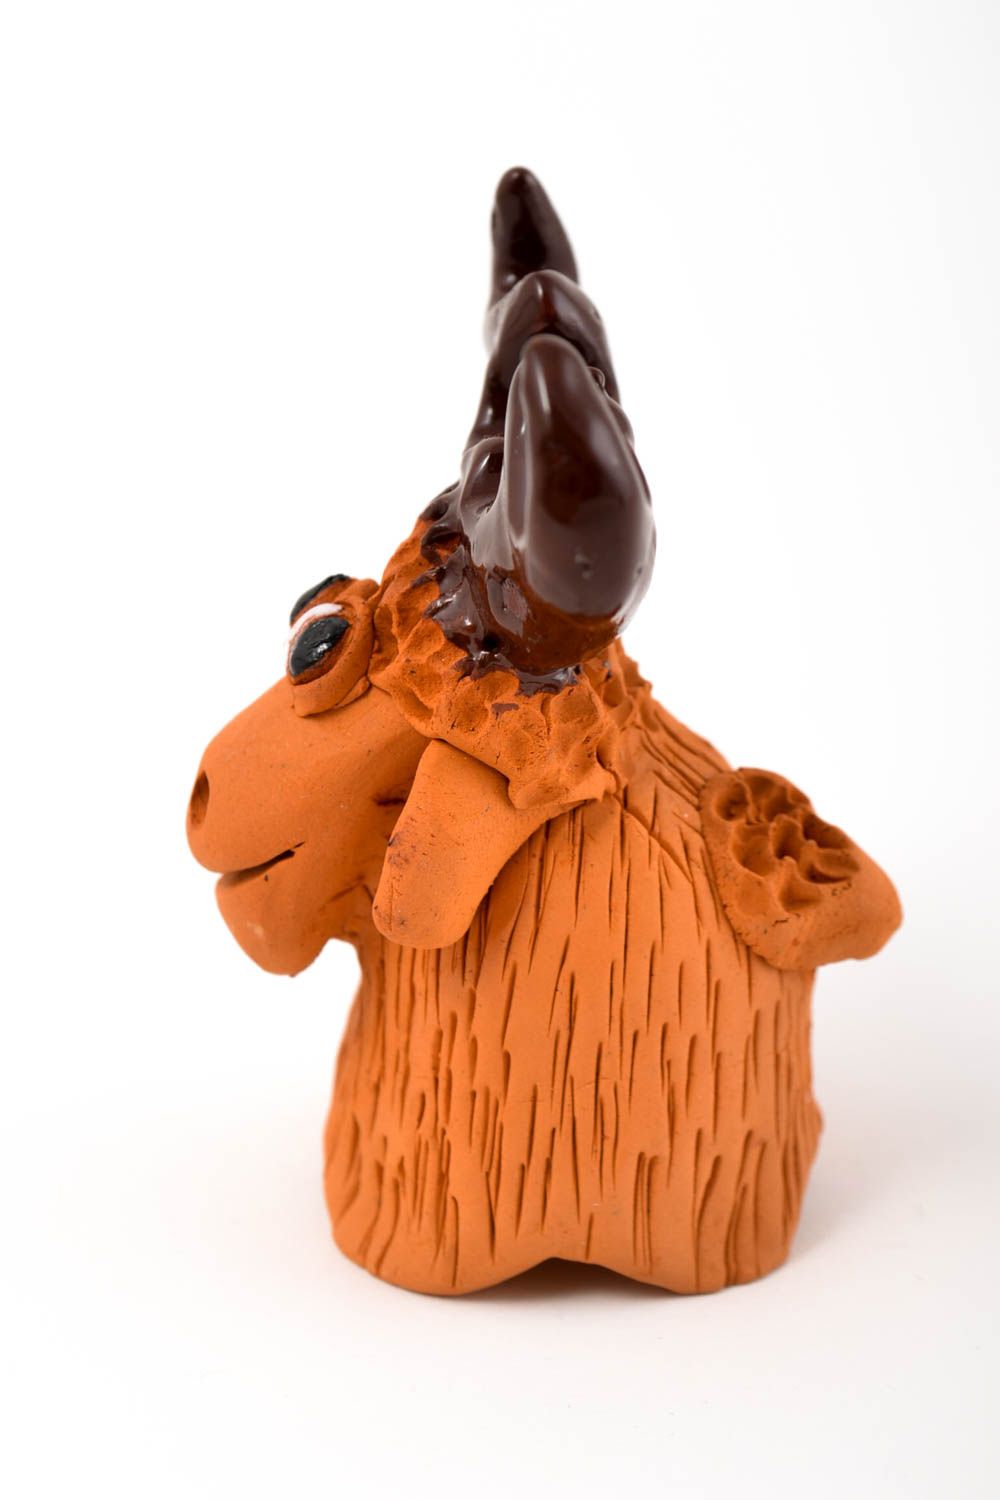 Фигурка животного статуэтка ручной работы игрушка из глины лось с рогами фото 4